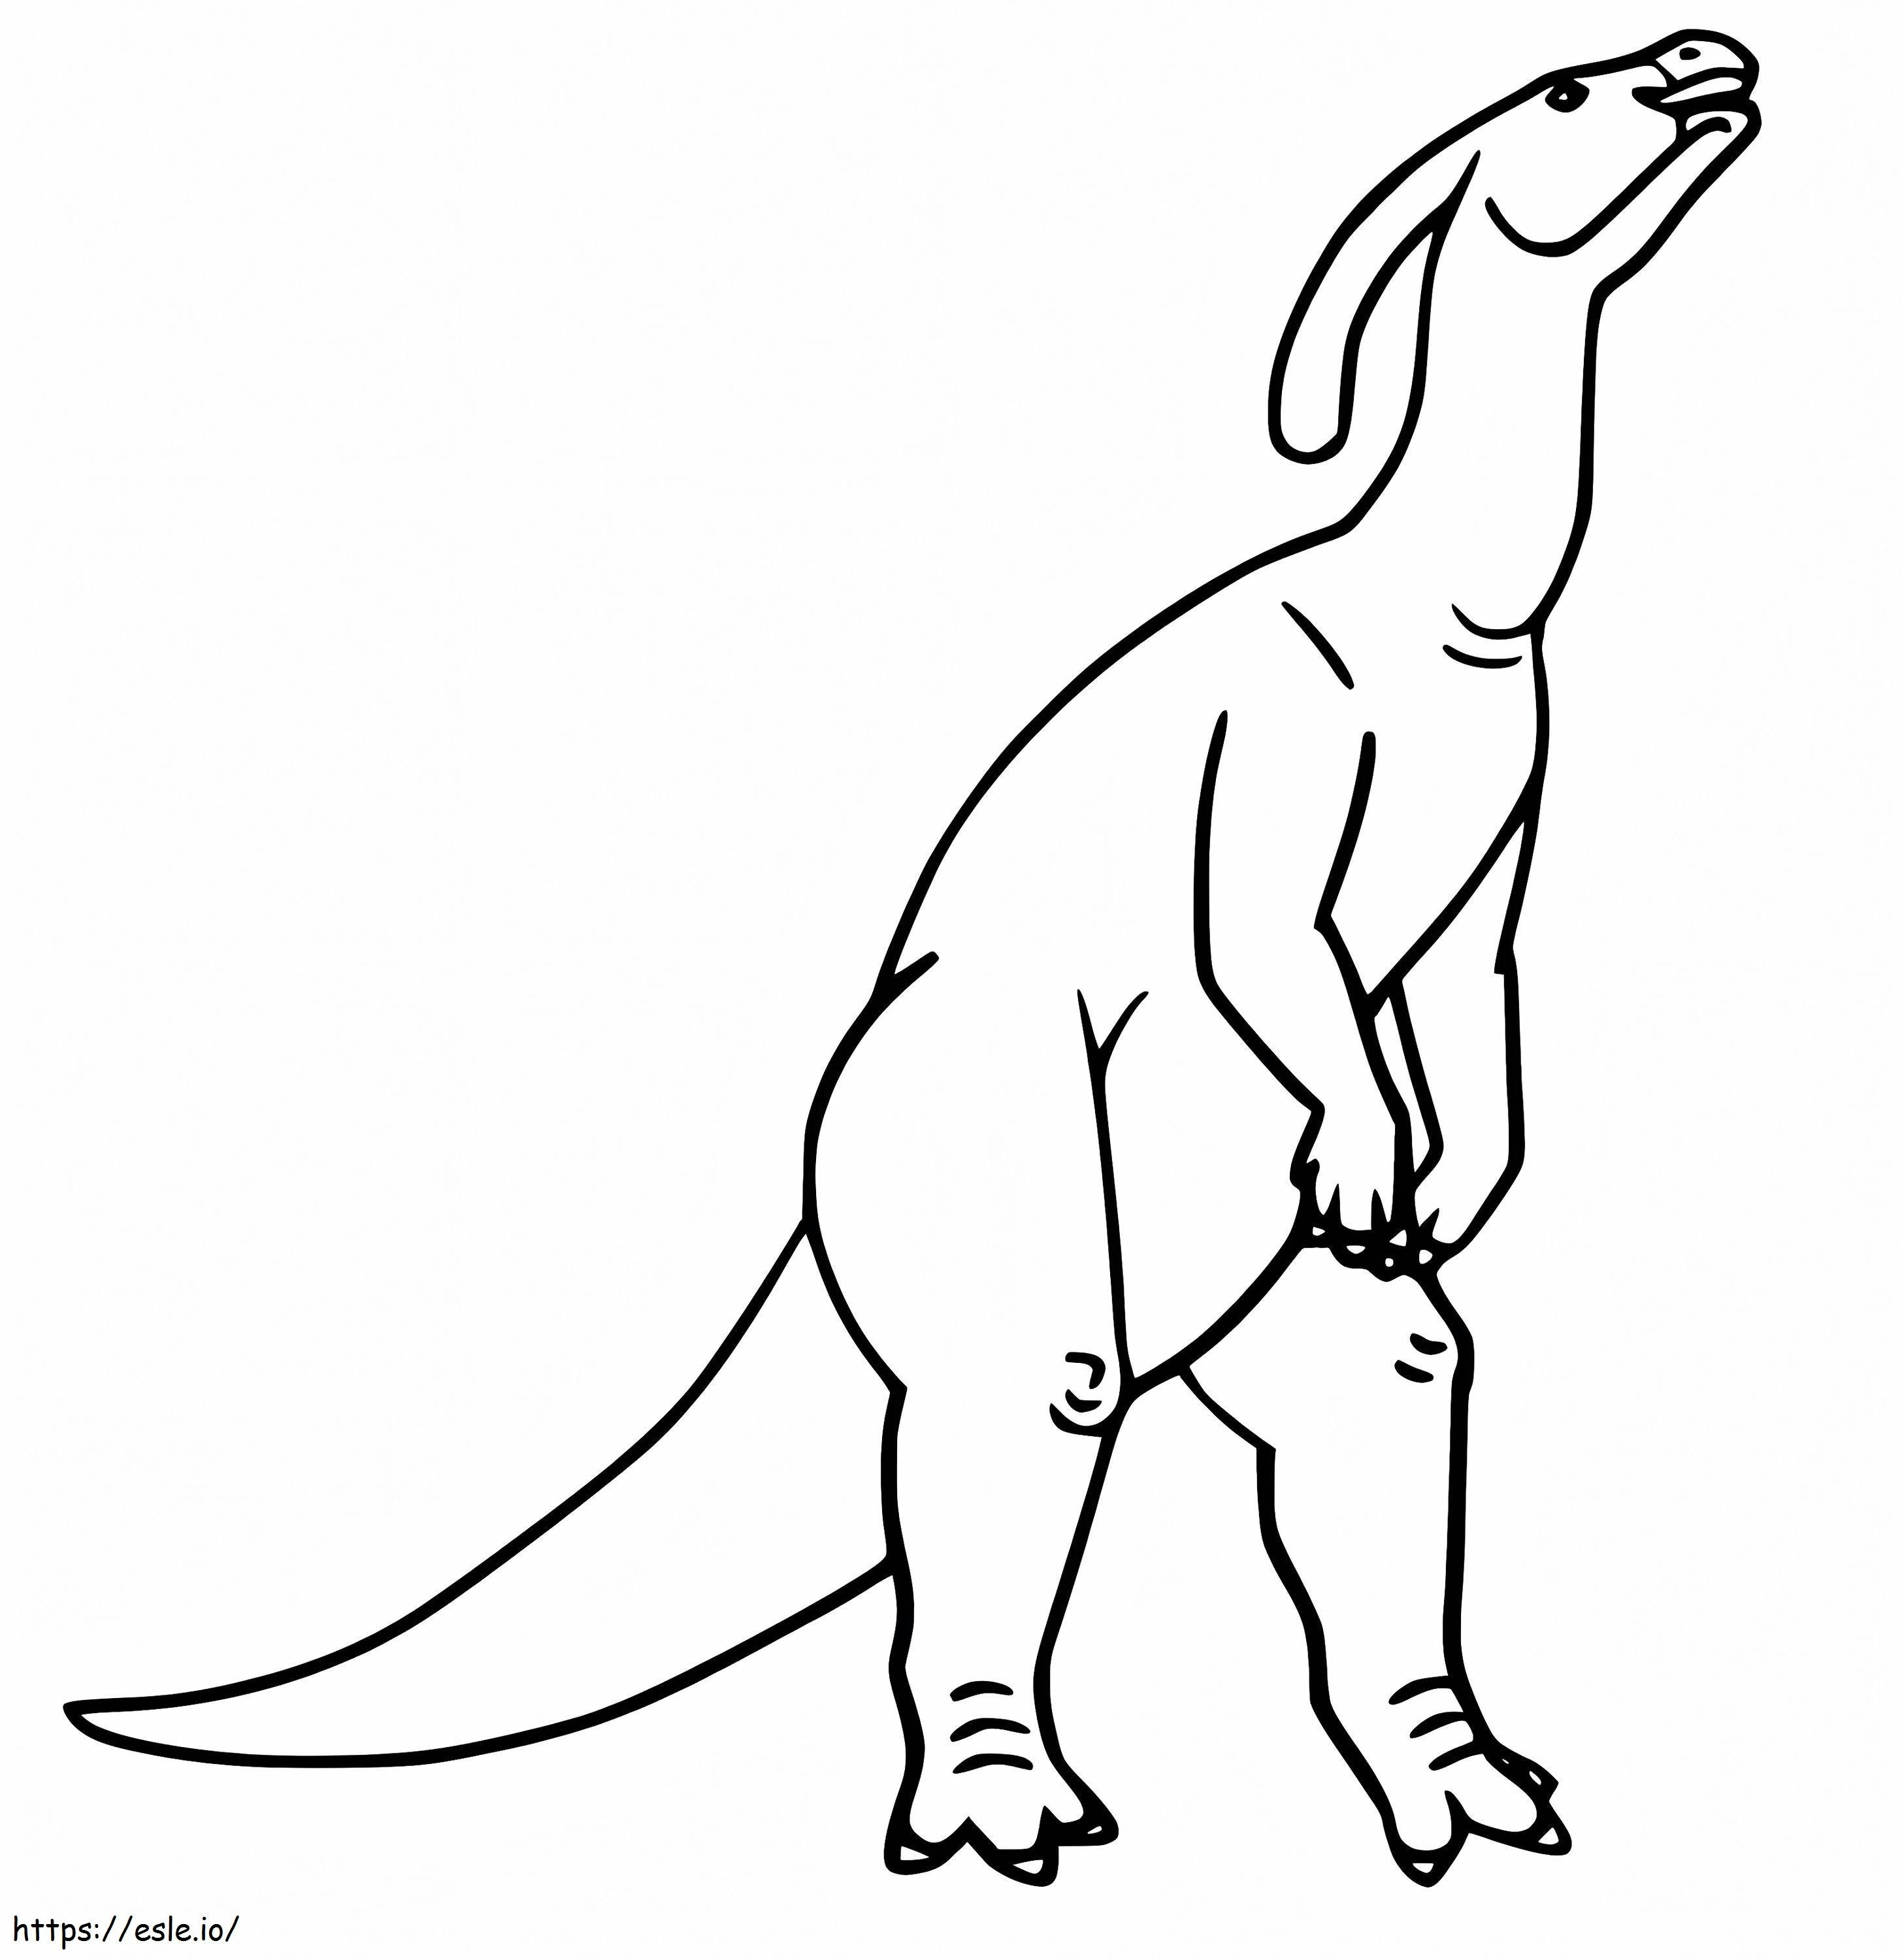 Parasaurolophus 1 kleurplaat kleurplaat